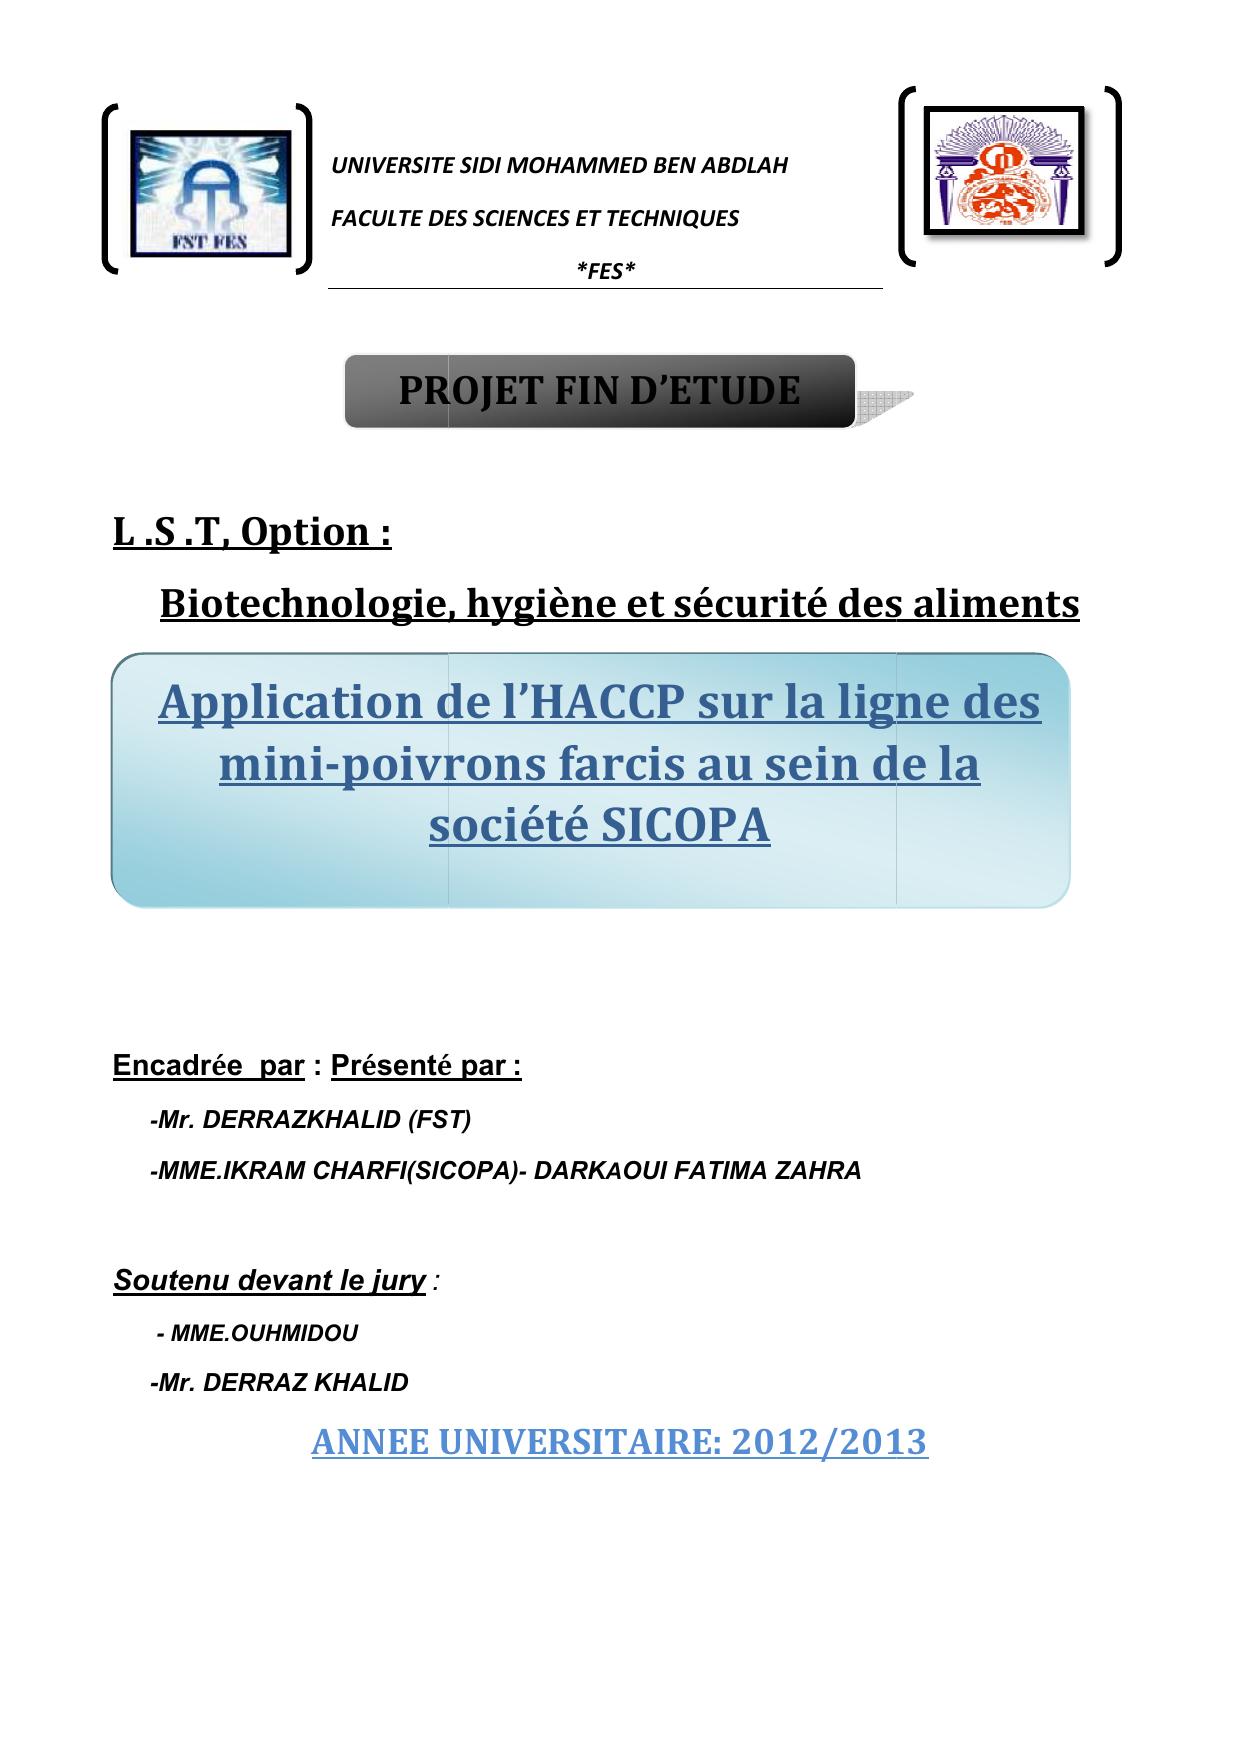 Application de l'HAACP sur la ligne des mini-poivrons farcis au sein de la société SICOPA